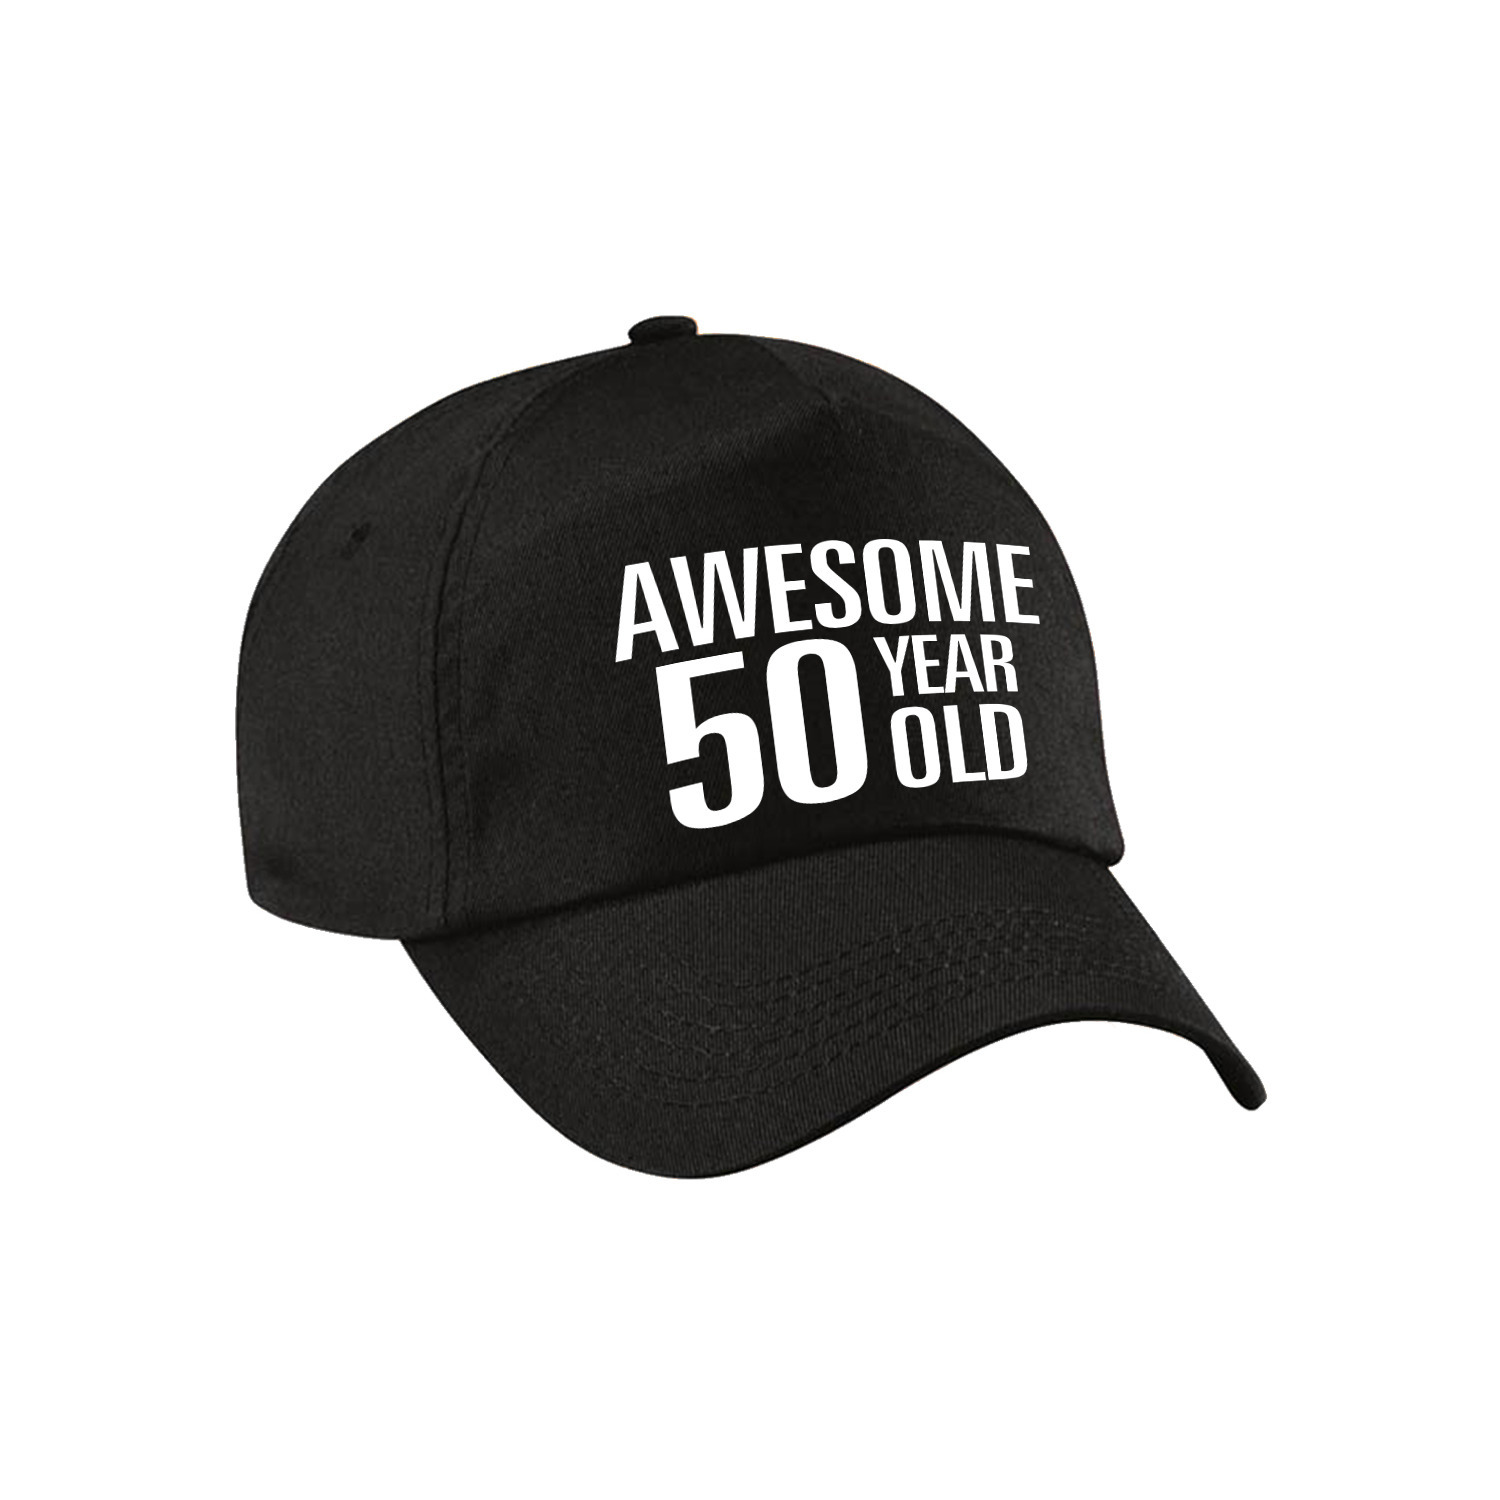 Awesome 50 year old verjaardag pet-cap zwart voor dames en heren